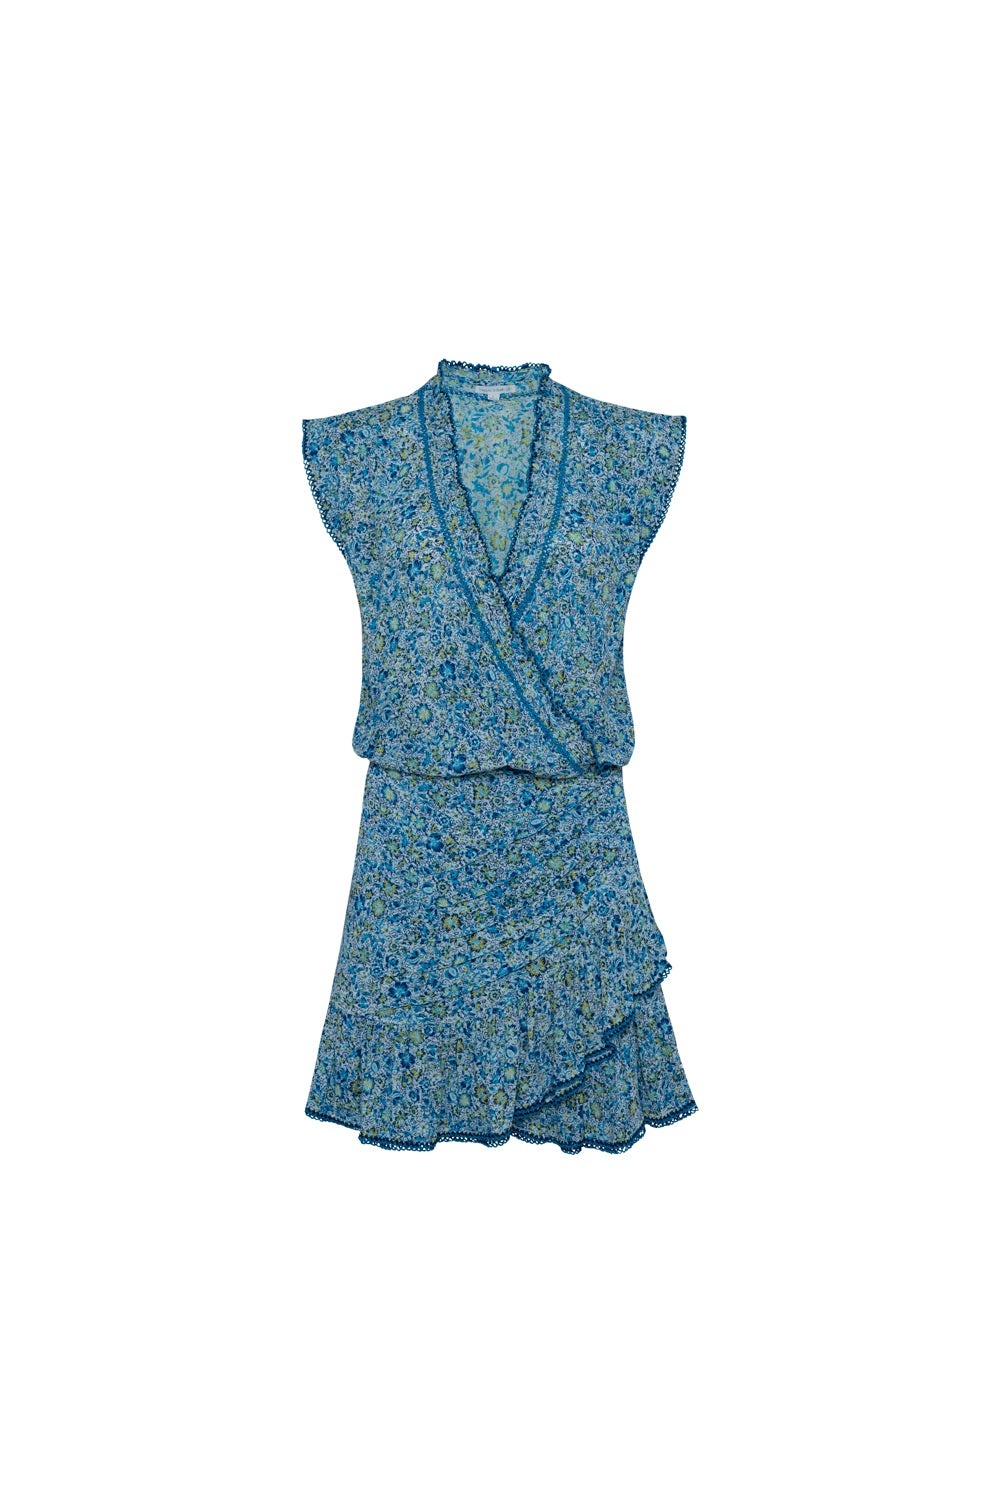 Estelle Blue Mayflower Mini Dress